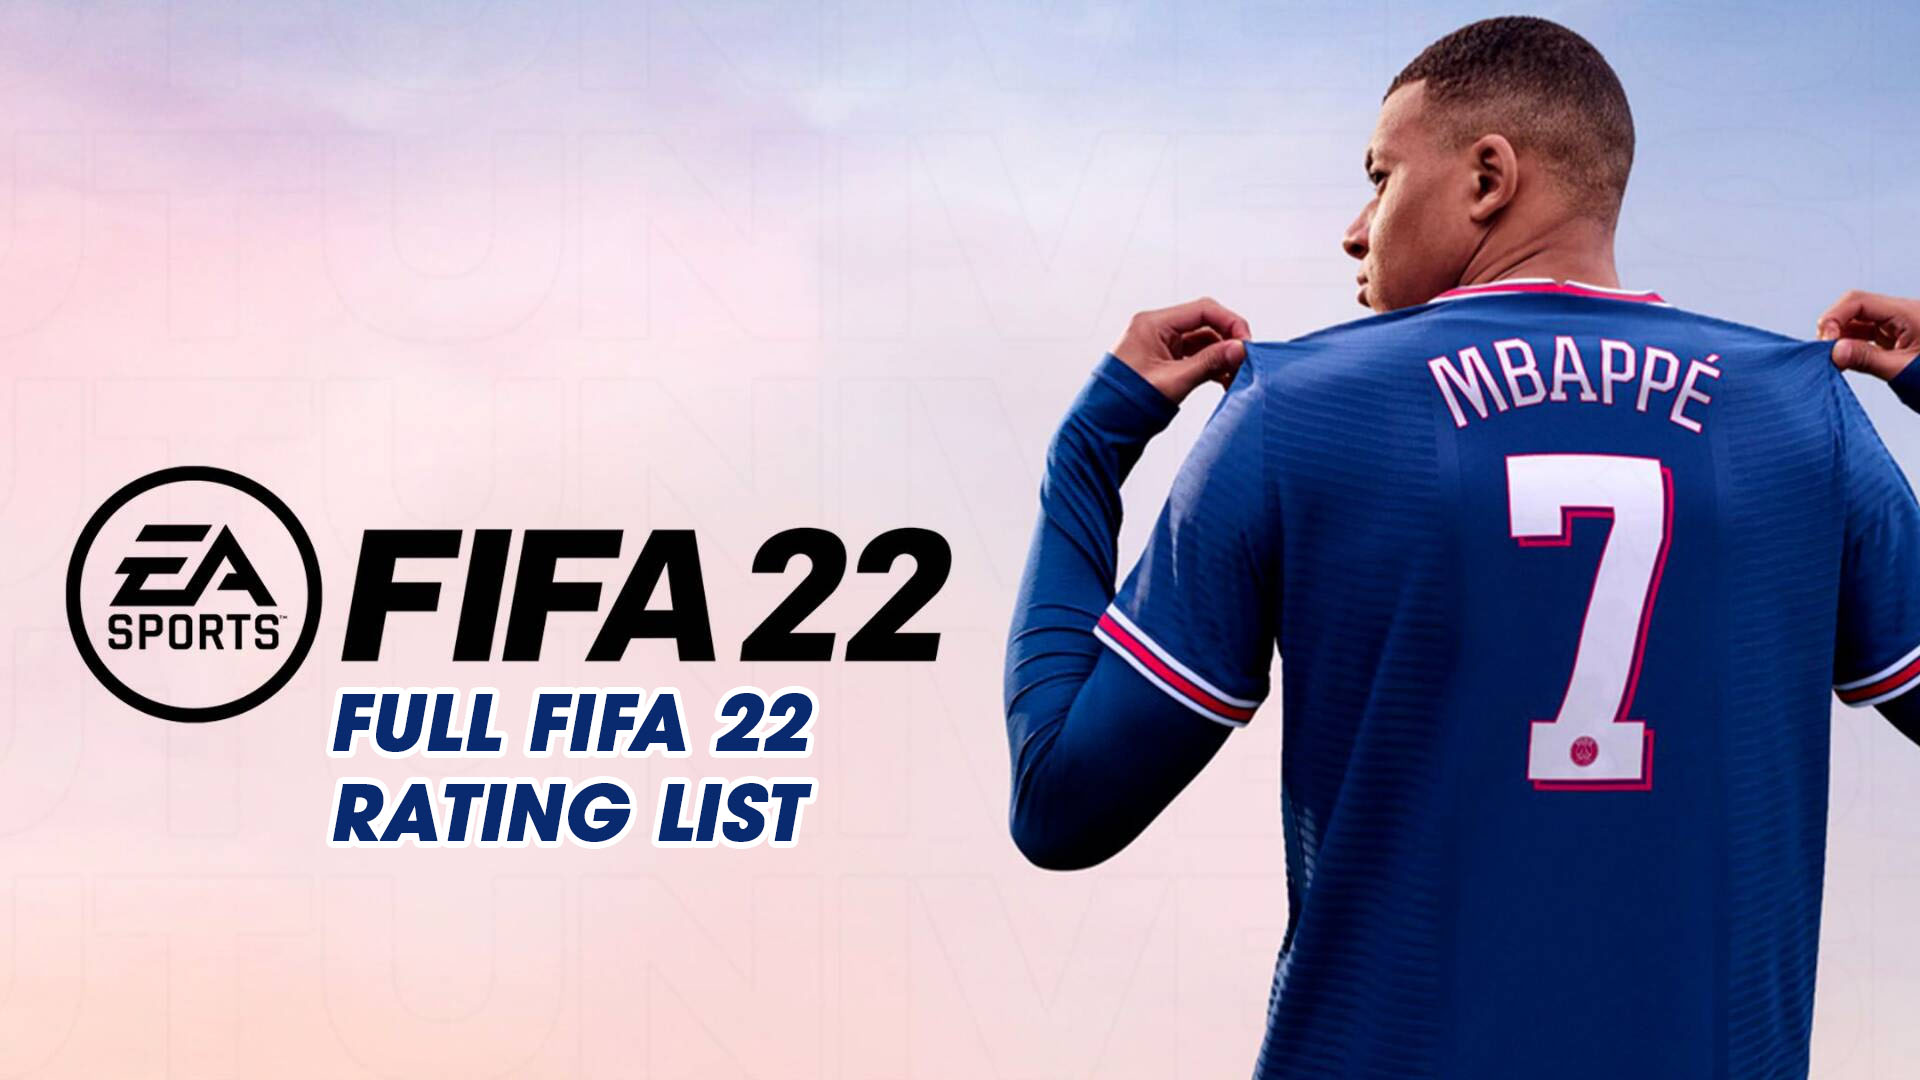 FIFA 22 ratings